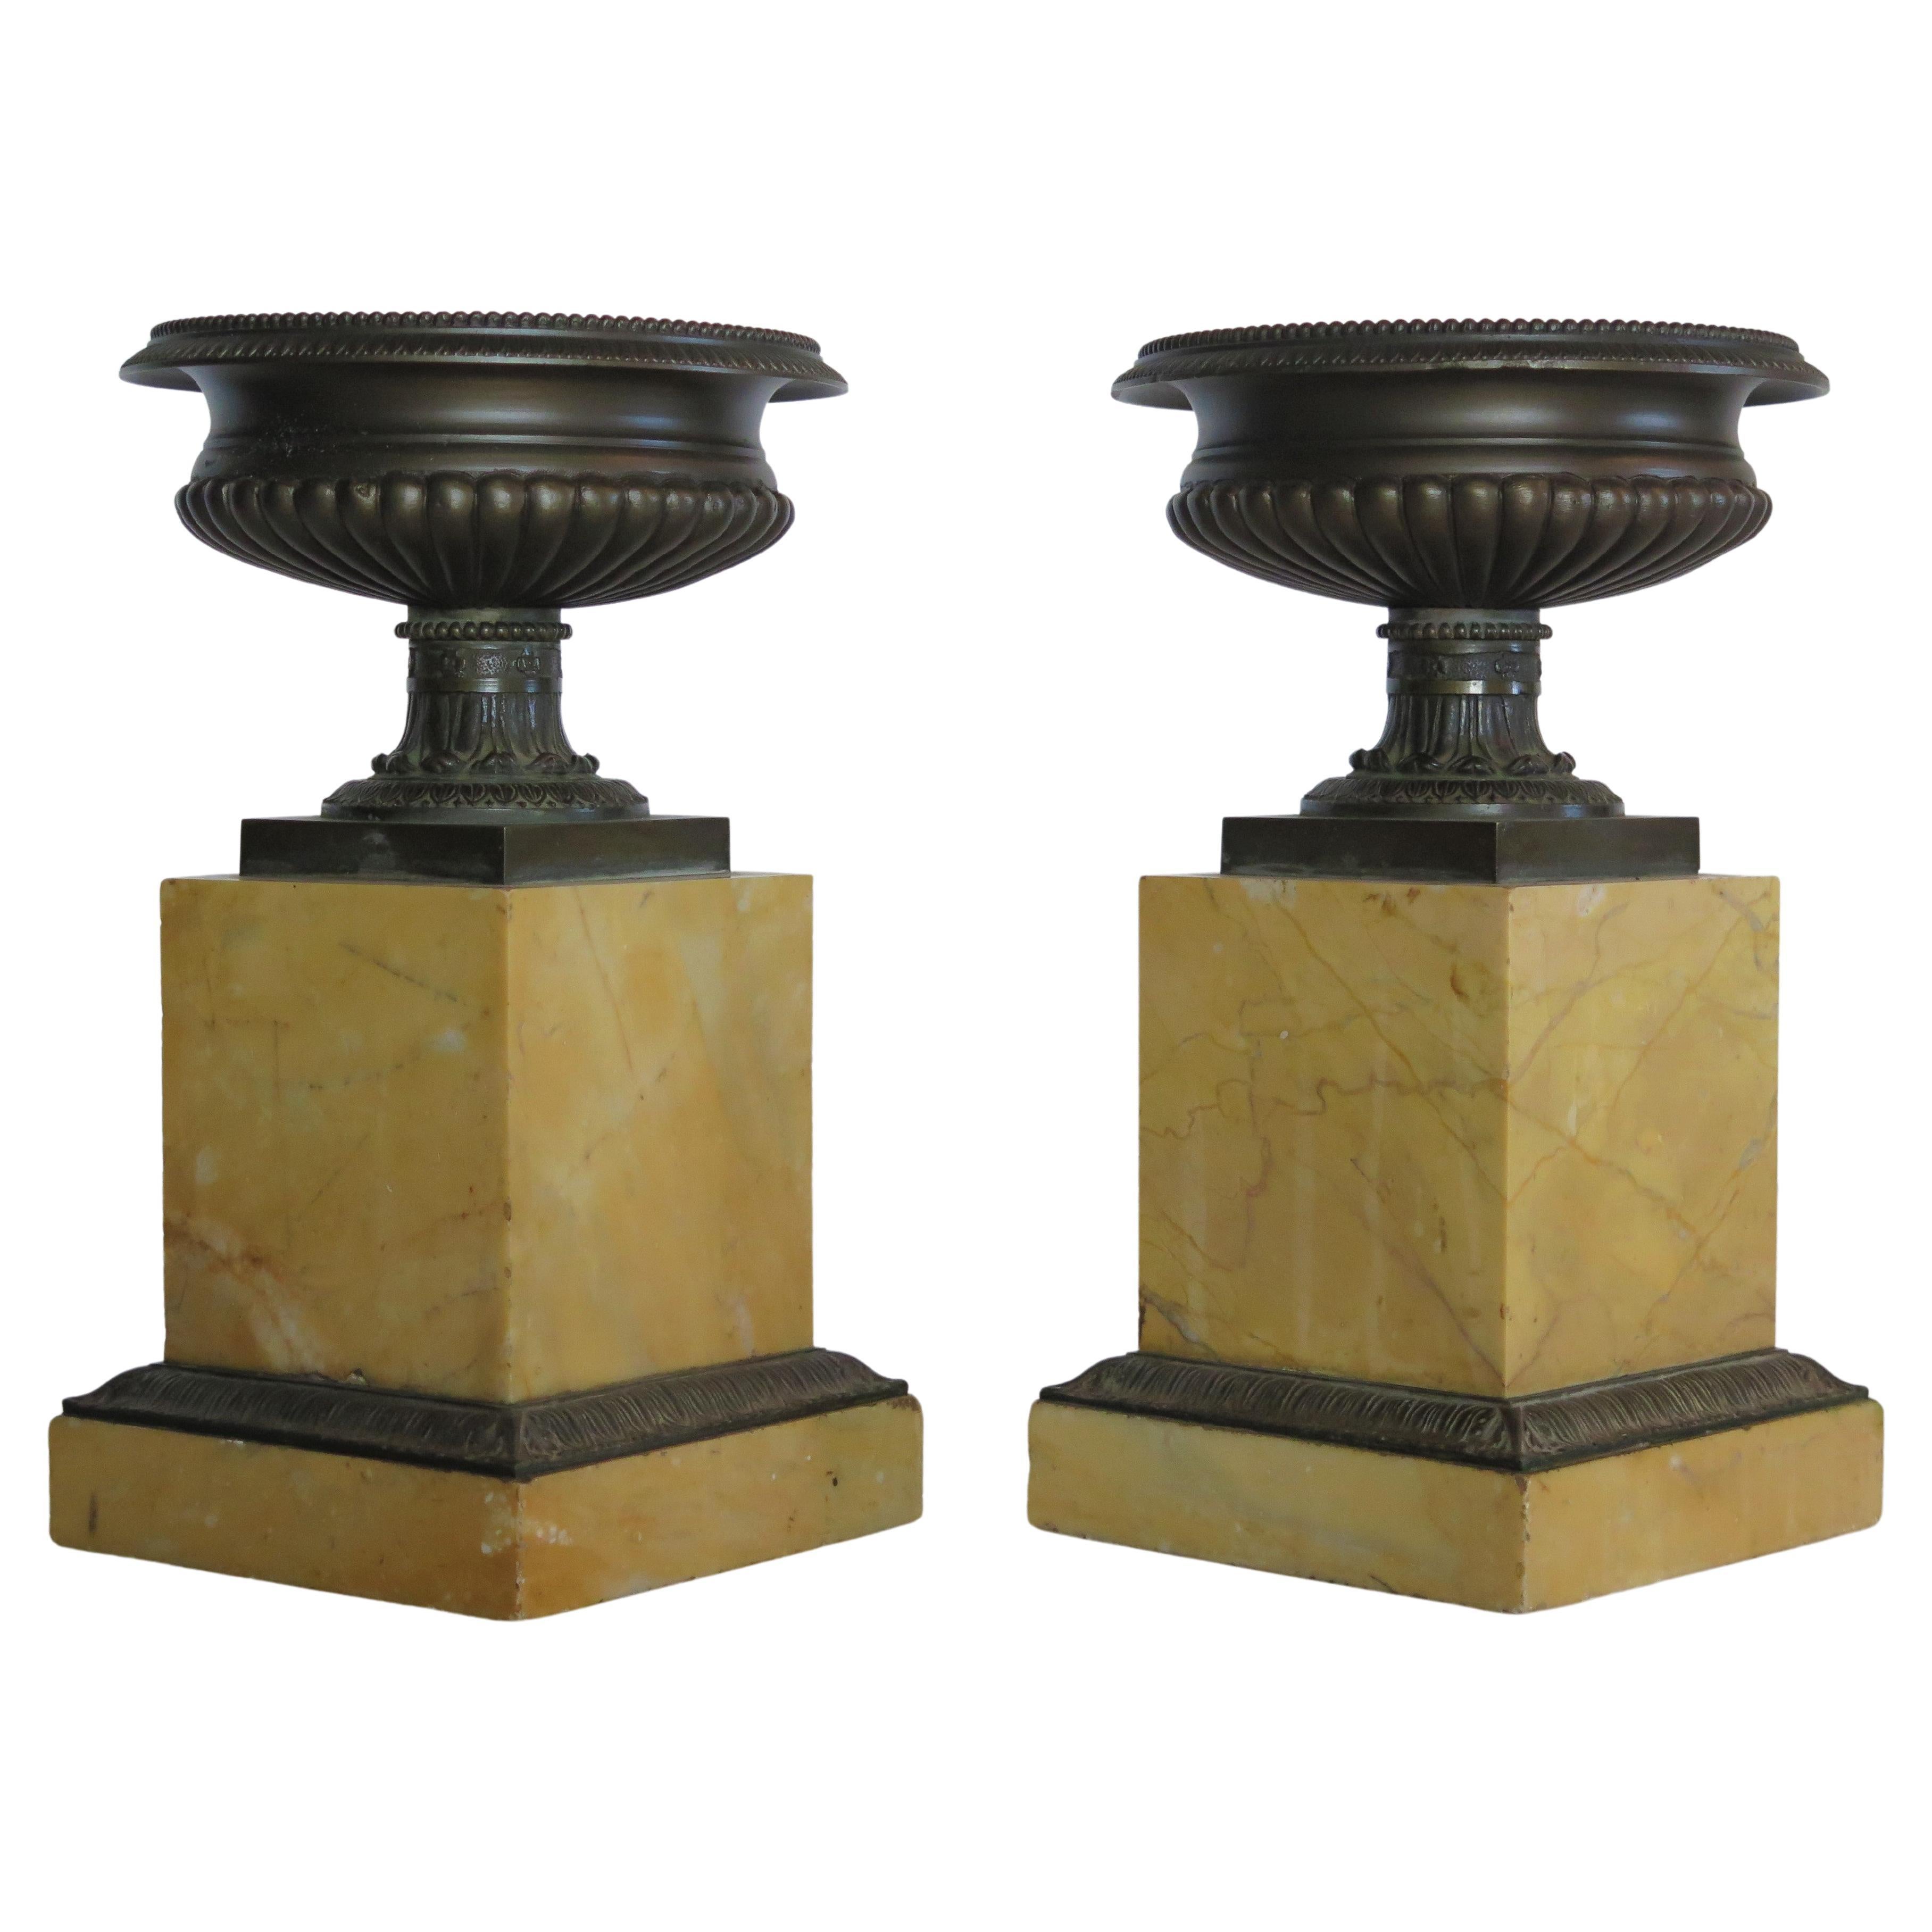 Ein Paar Grand-Tour-Bronze-Tazzas auf gestuften Sockeln aus Siena-Marmor, montiert auf Sockeln aus Siena-Marmor mit Bronzeleisten. Circa 1820, Italien.